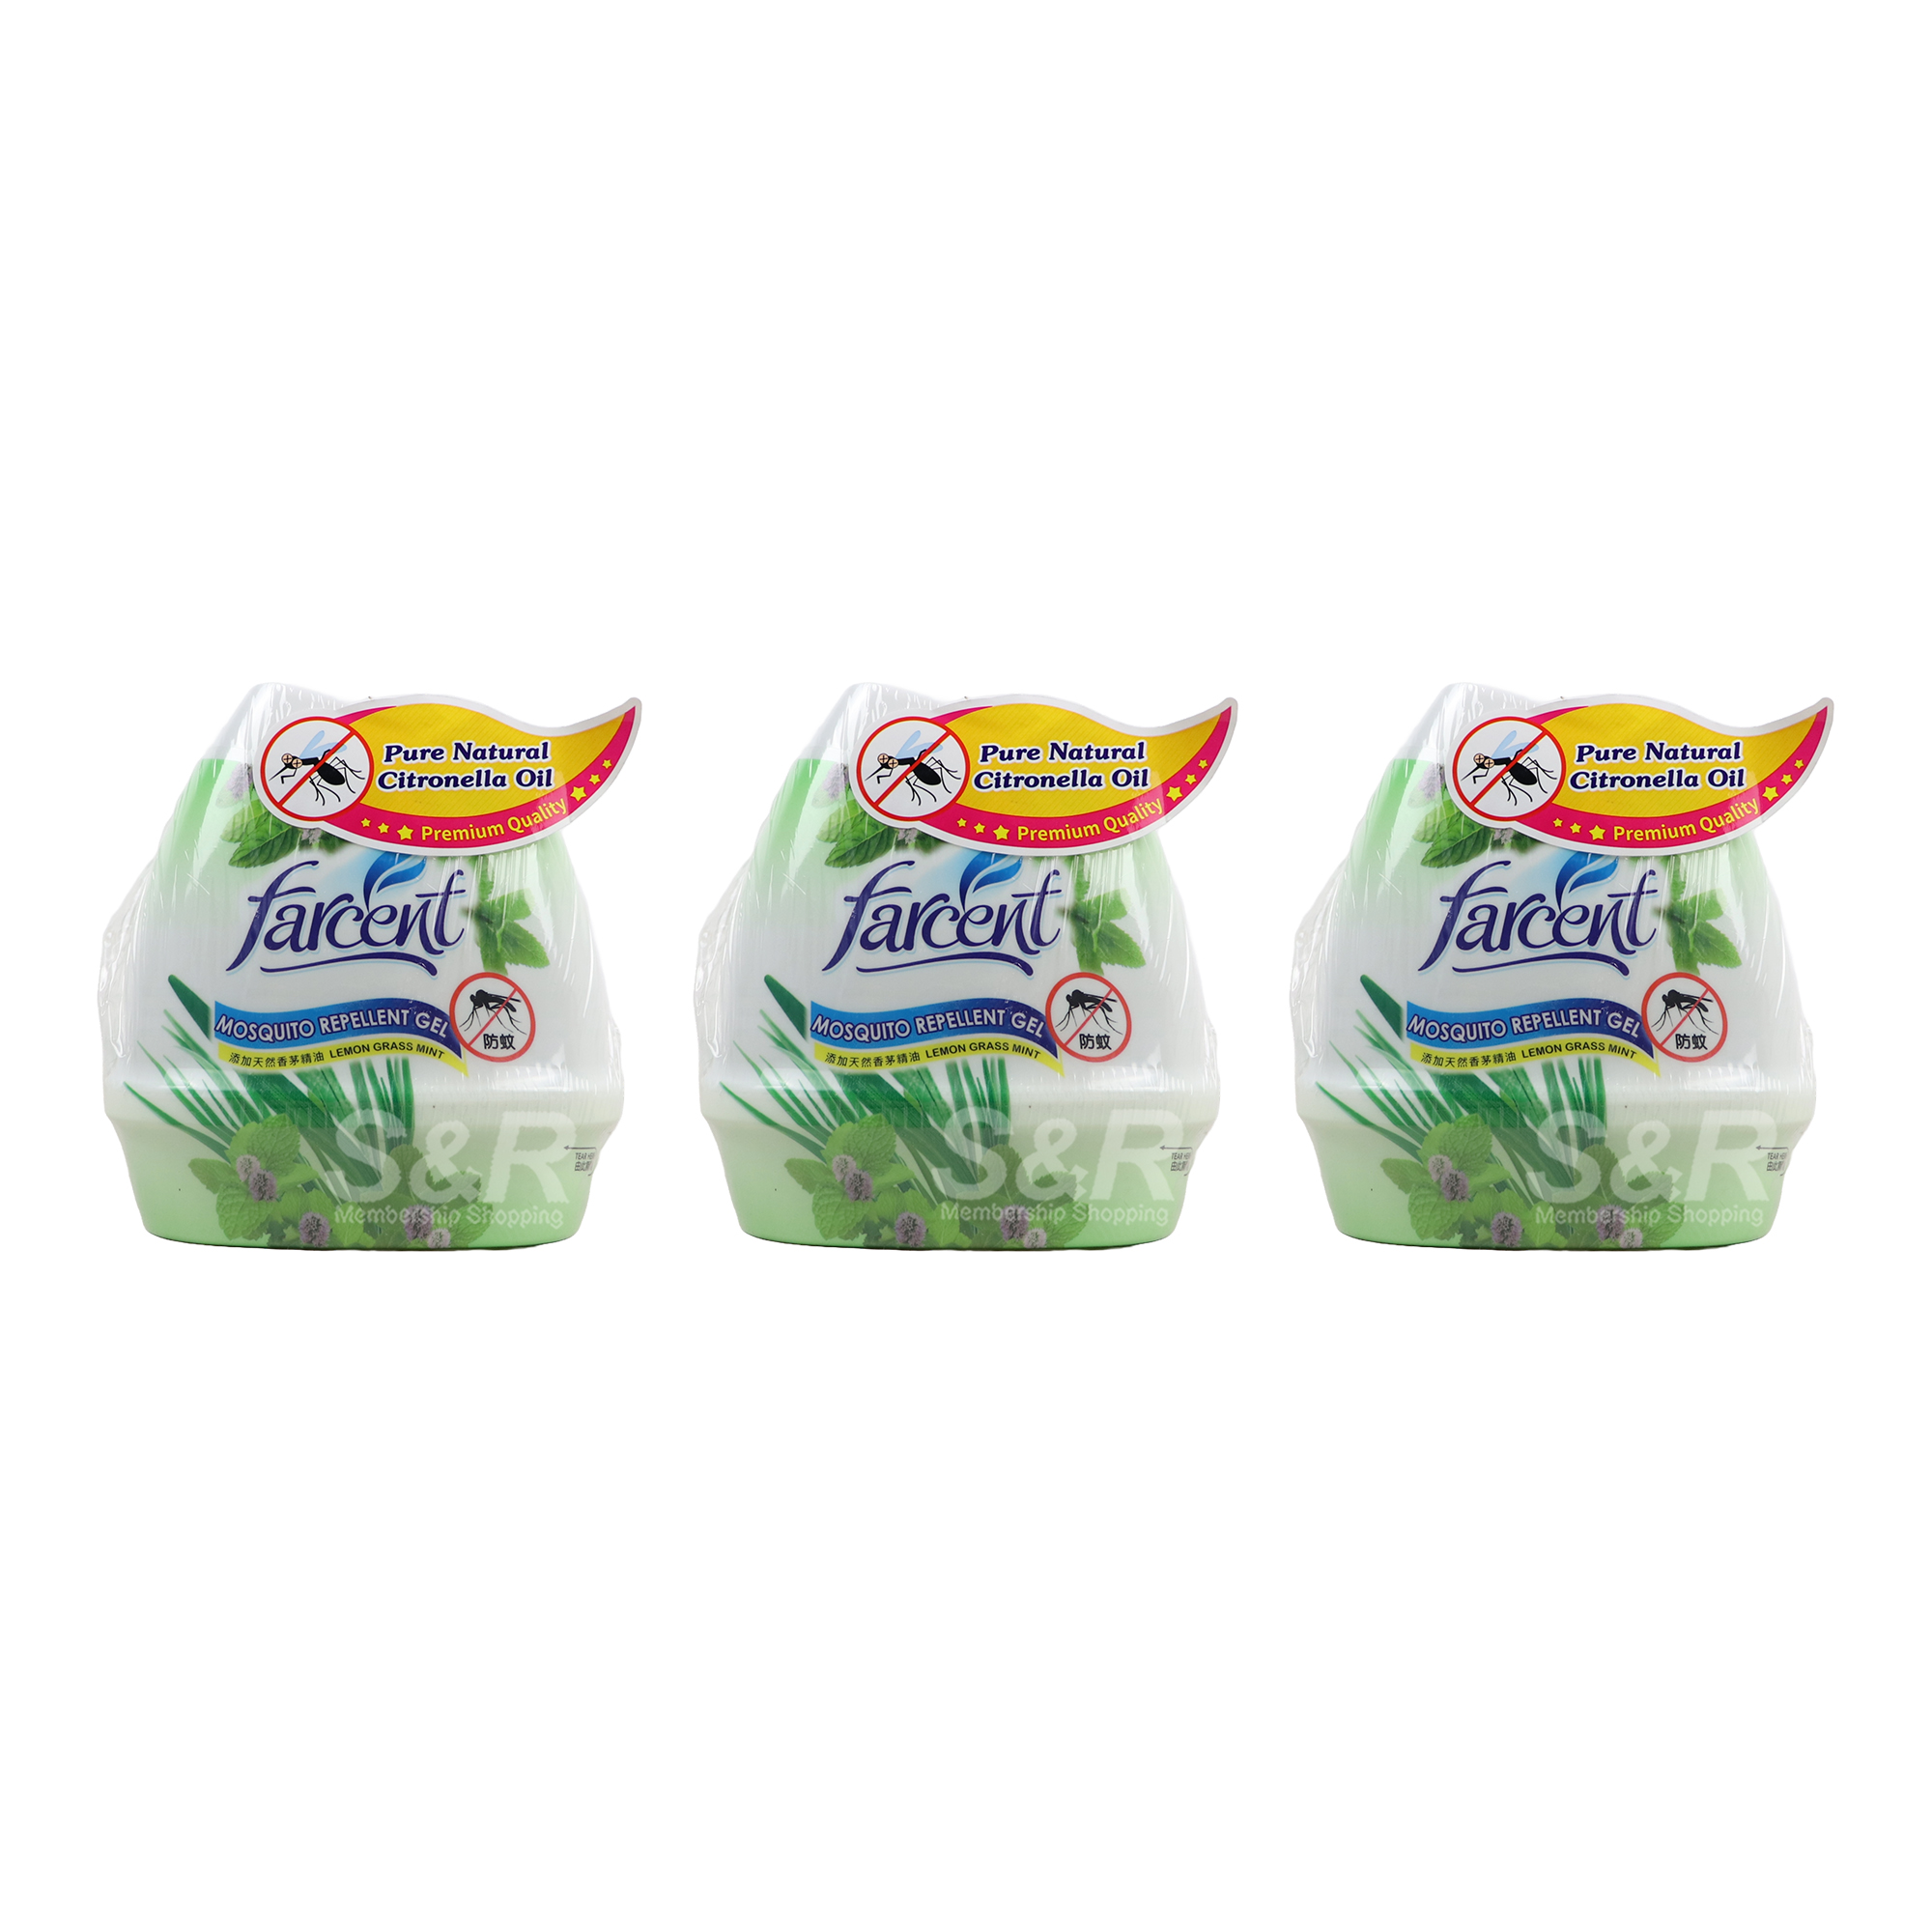 Farcent Mosquito Repellent Gel Lemon Grass Mint 3pcs